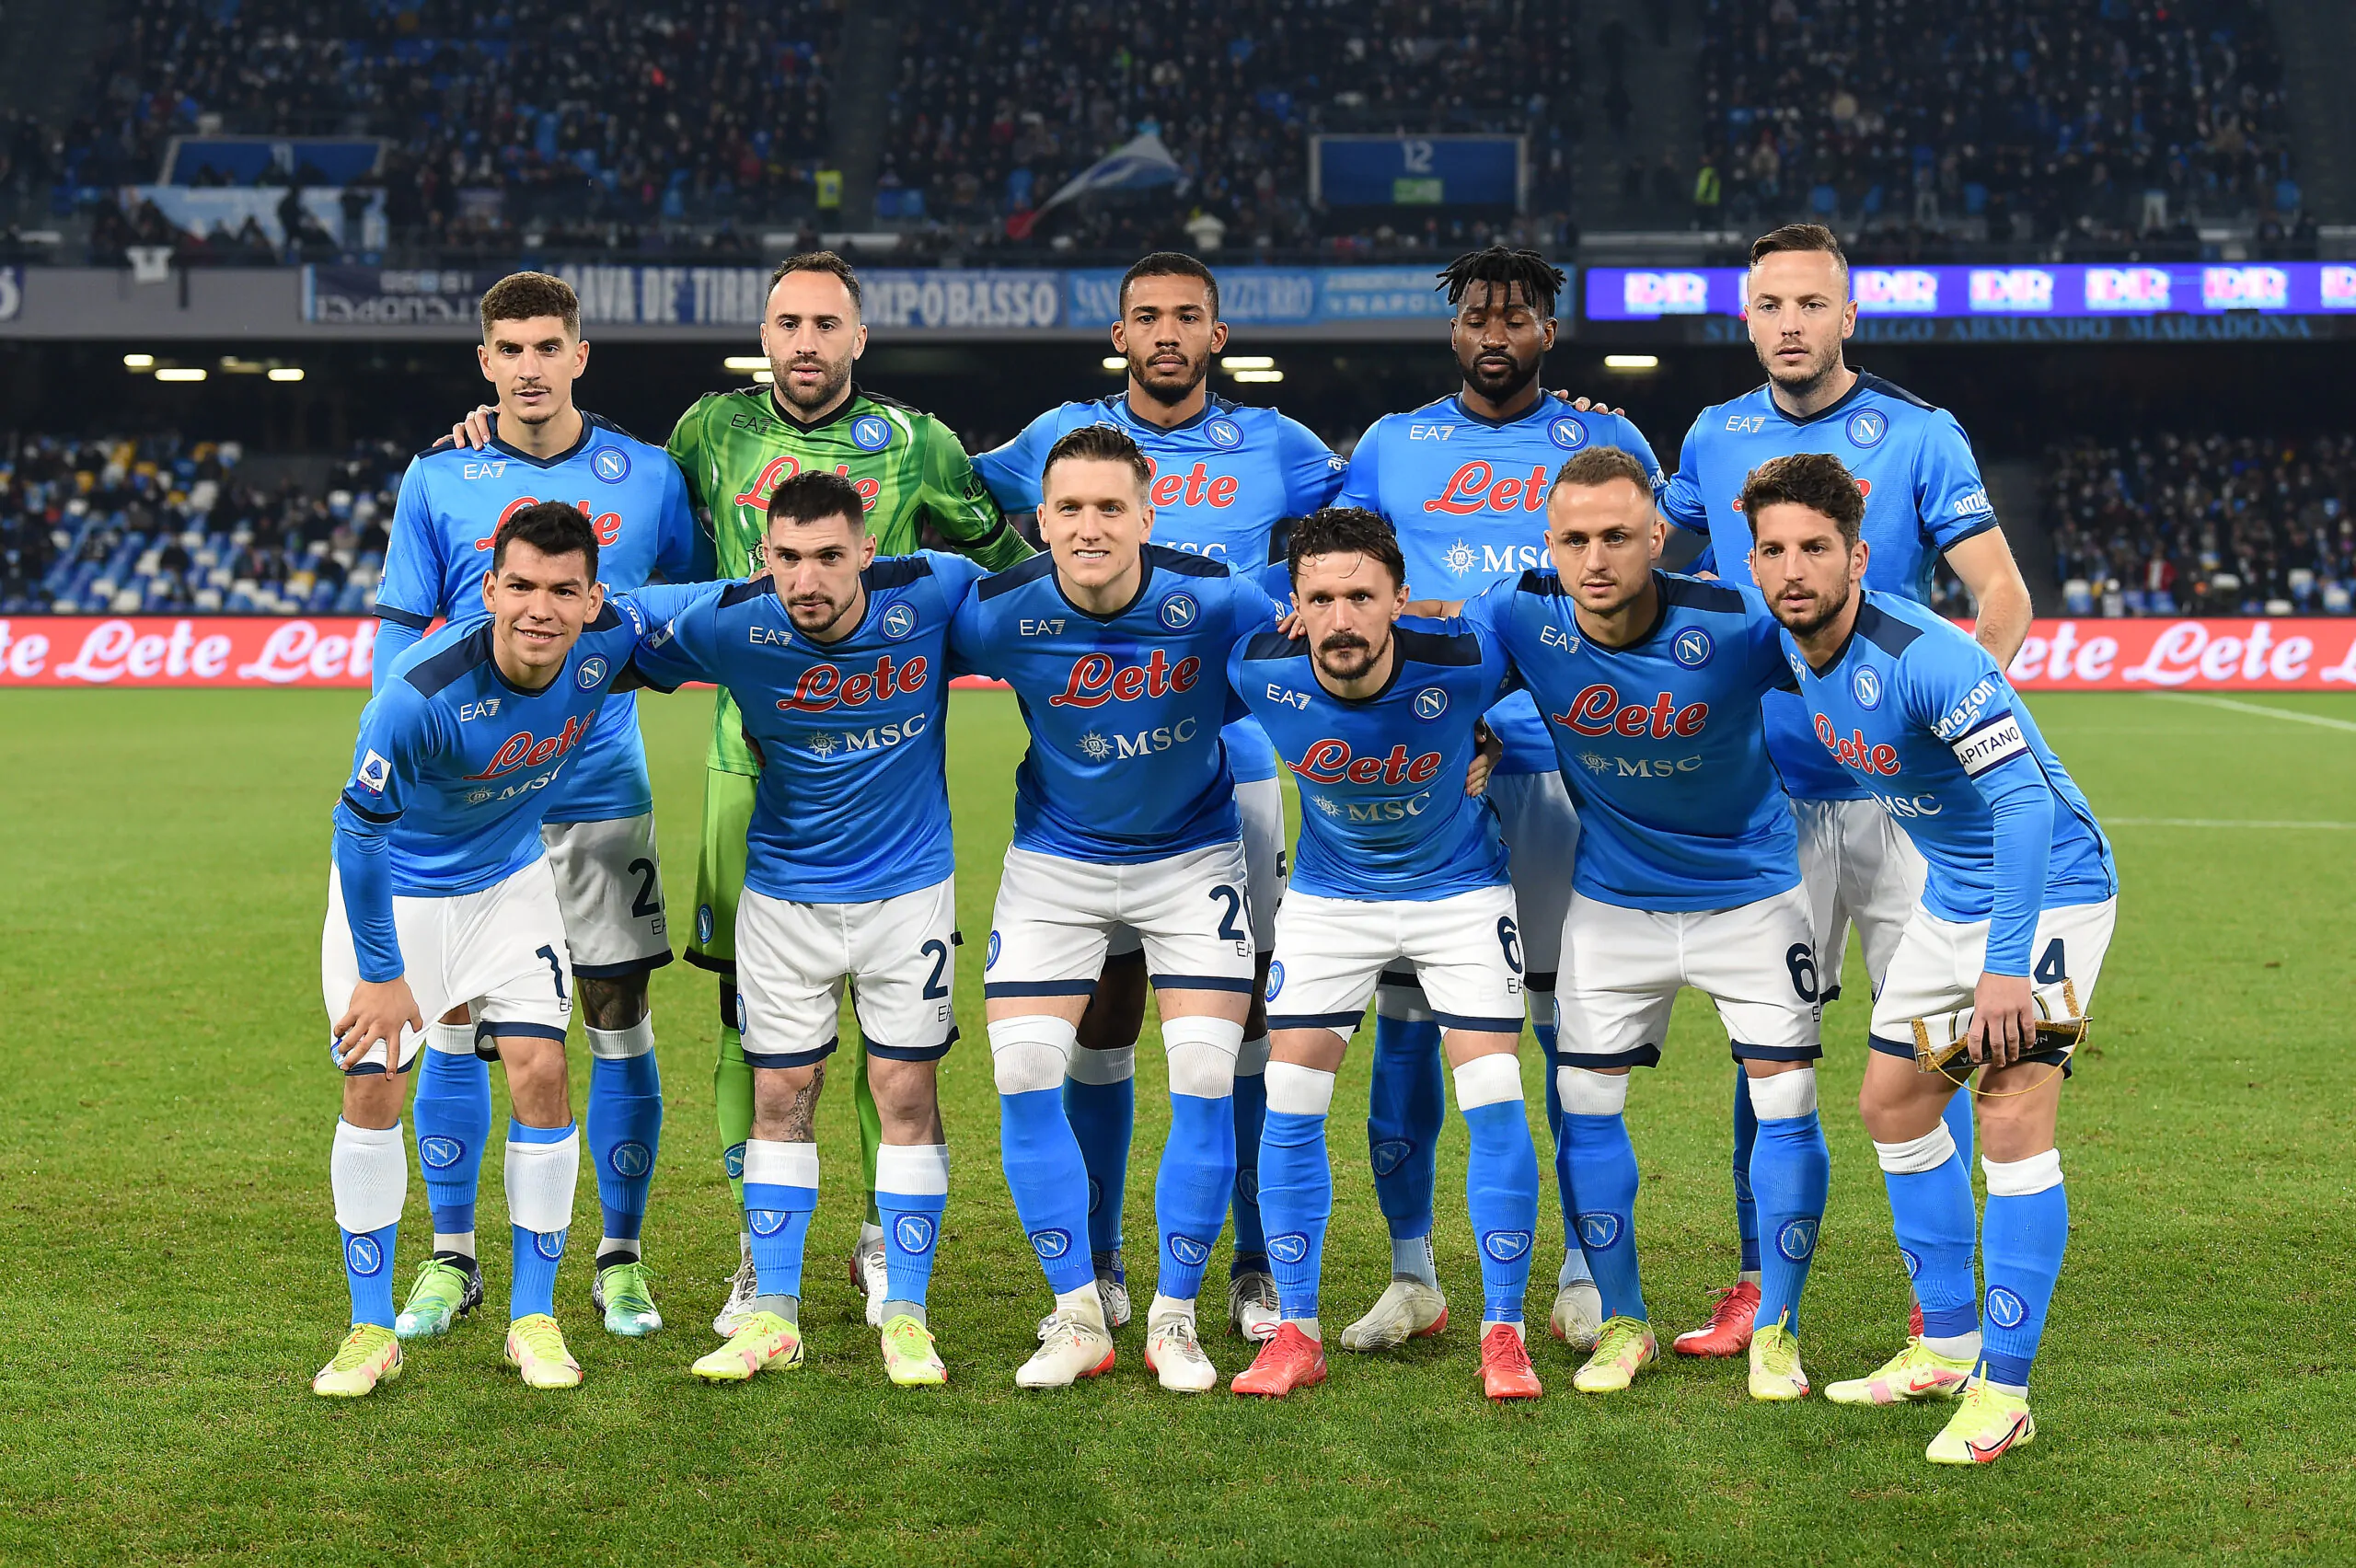 Arriva la decisione definitiva del Napoli: lo farà contro la Juve!